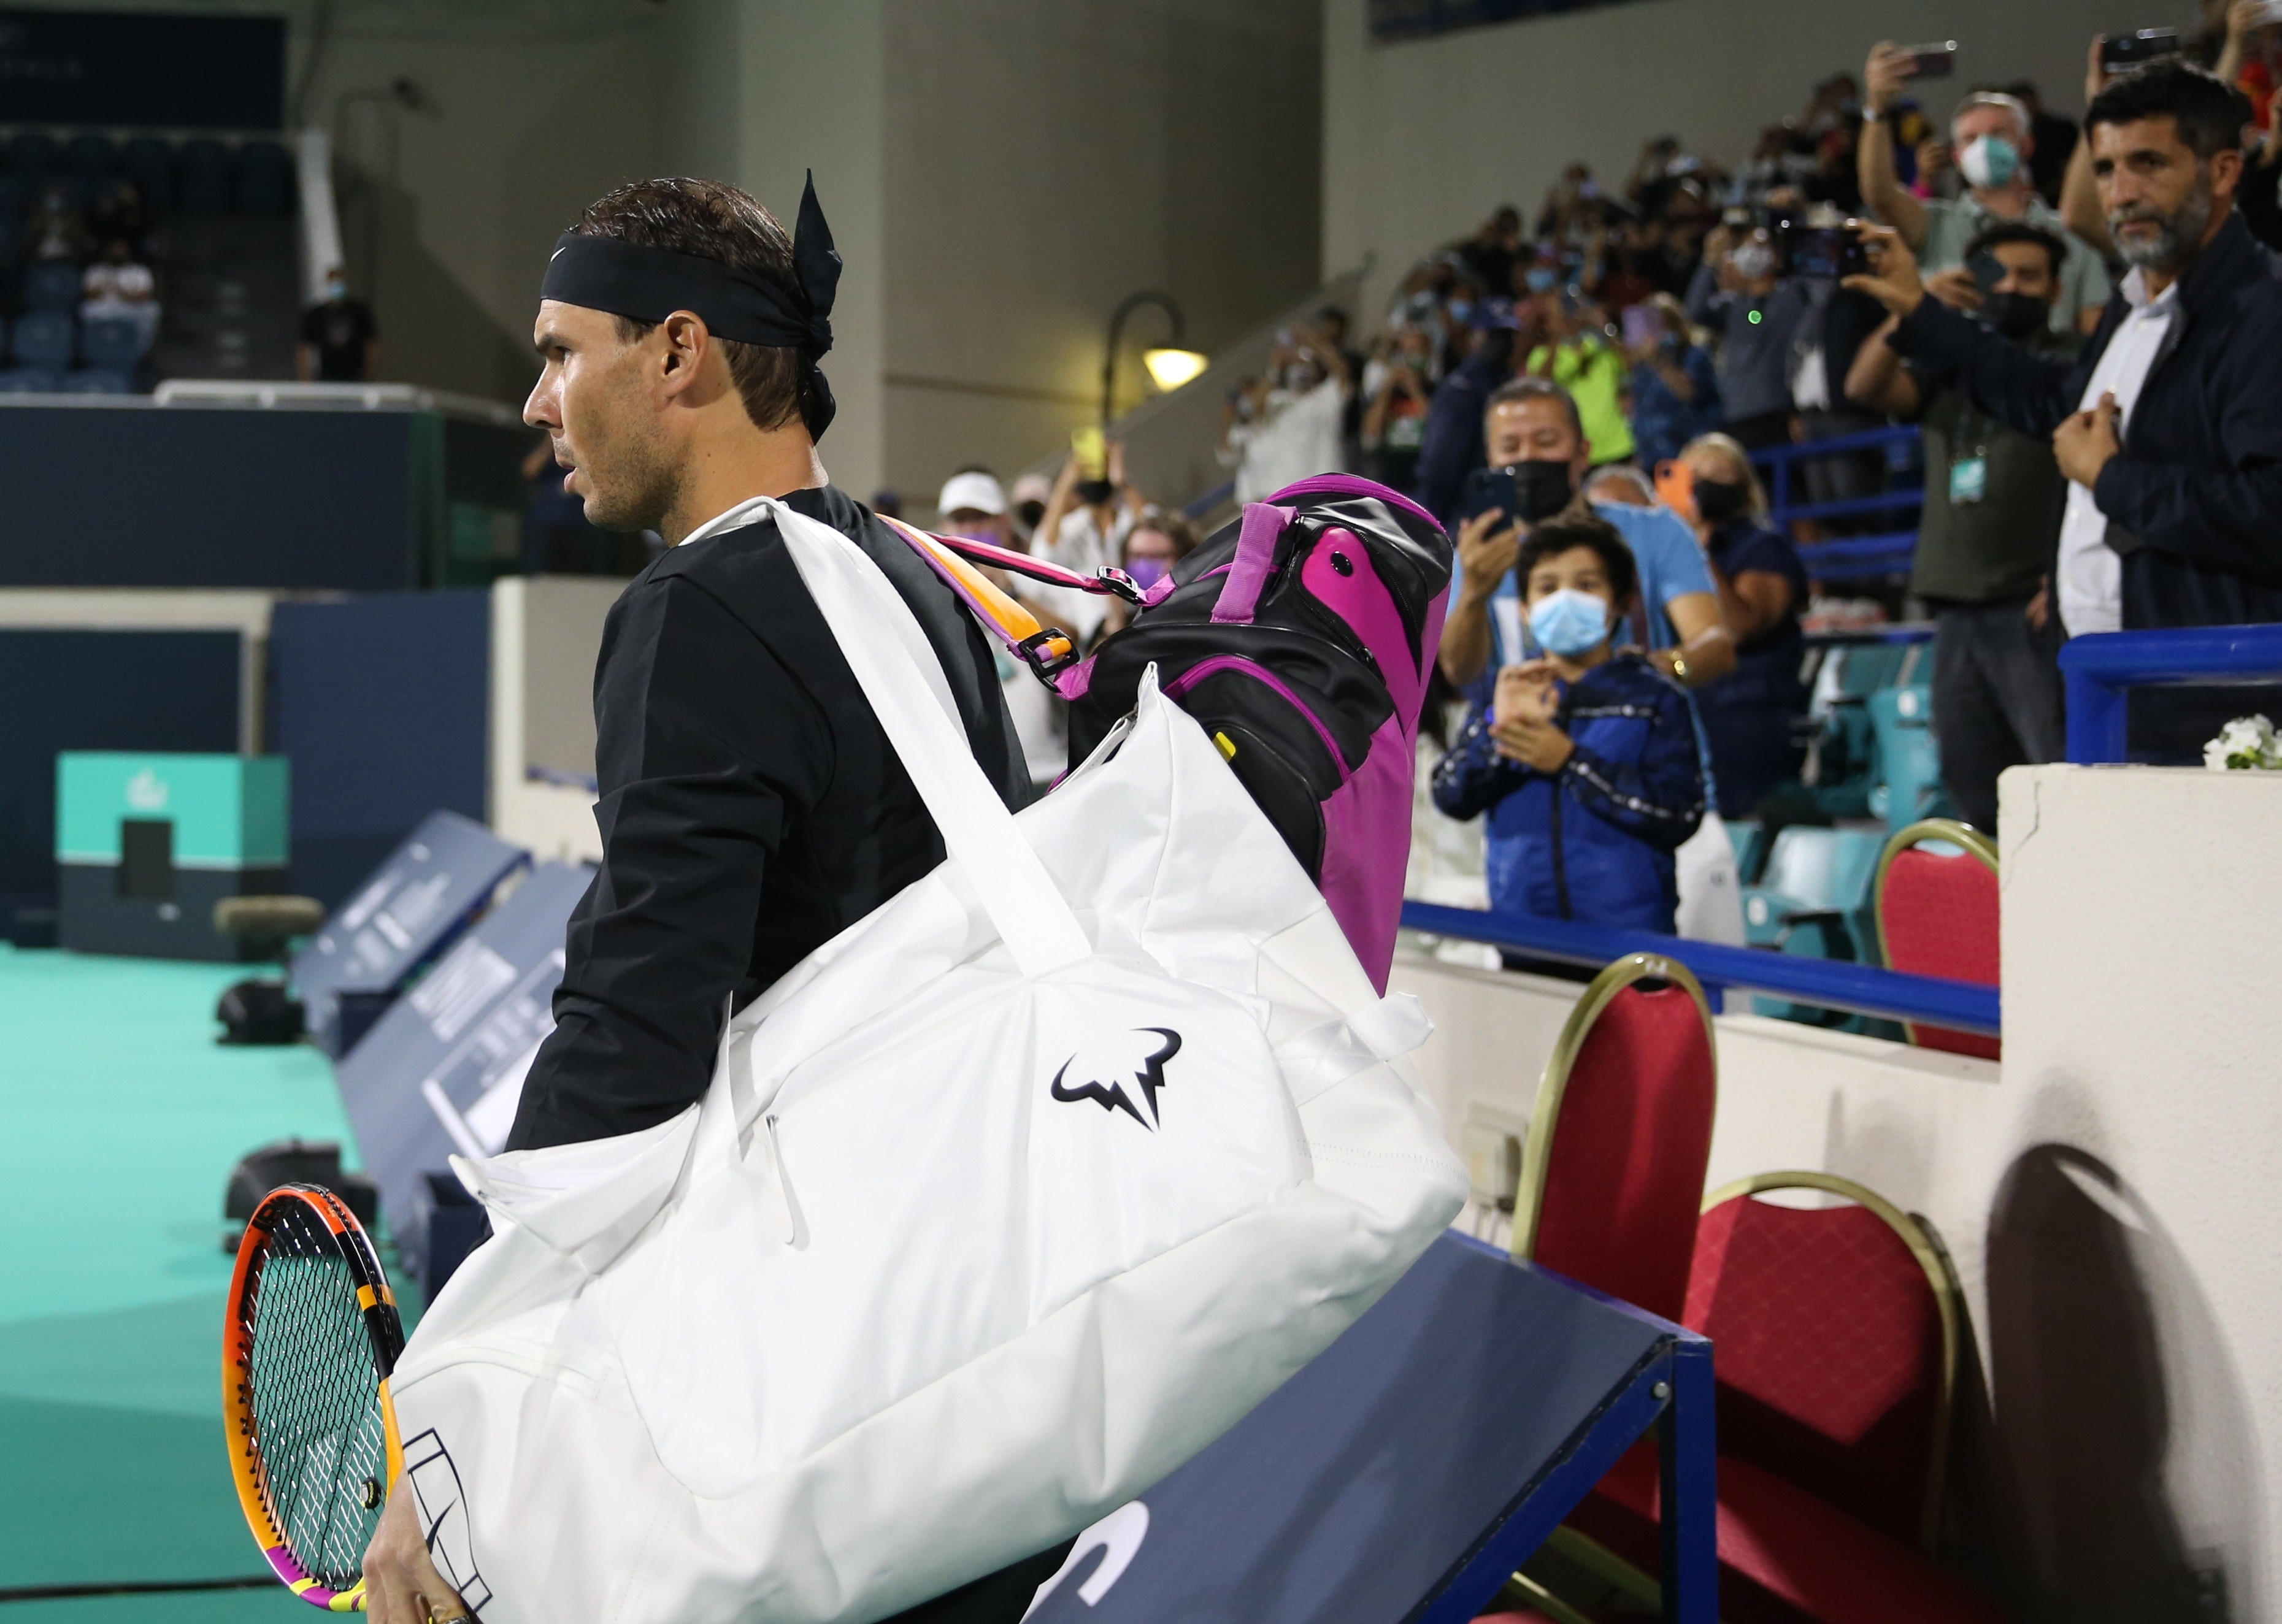 El tenista español Rafael Nadal of Spain llegando al partido contra Andy Murray en el Mubadala World Tennis Championship at en el International Tennis Centre, Zayed Sports City de Abu Dhabi el pasado 17 December. (Foto Prensa Libre: EFE)